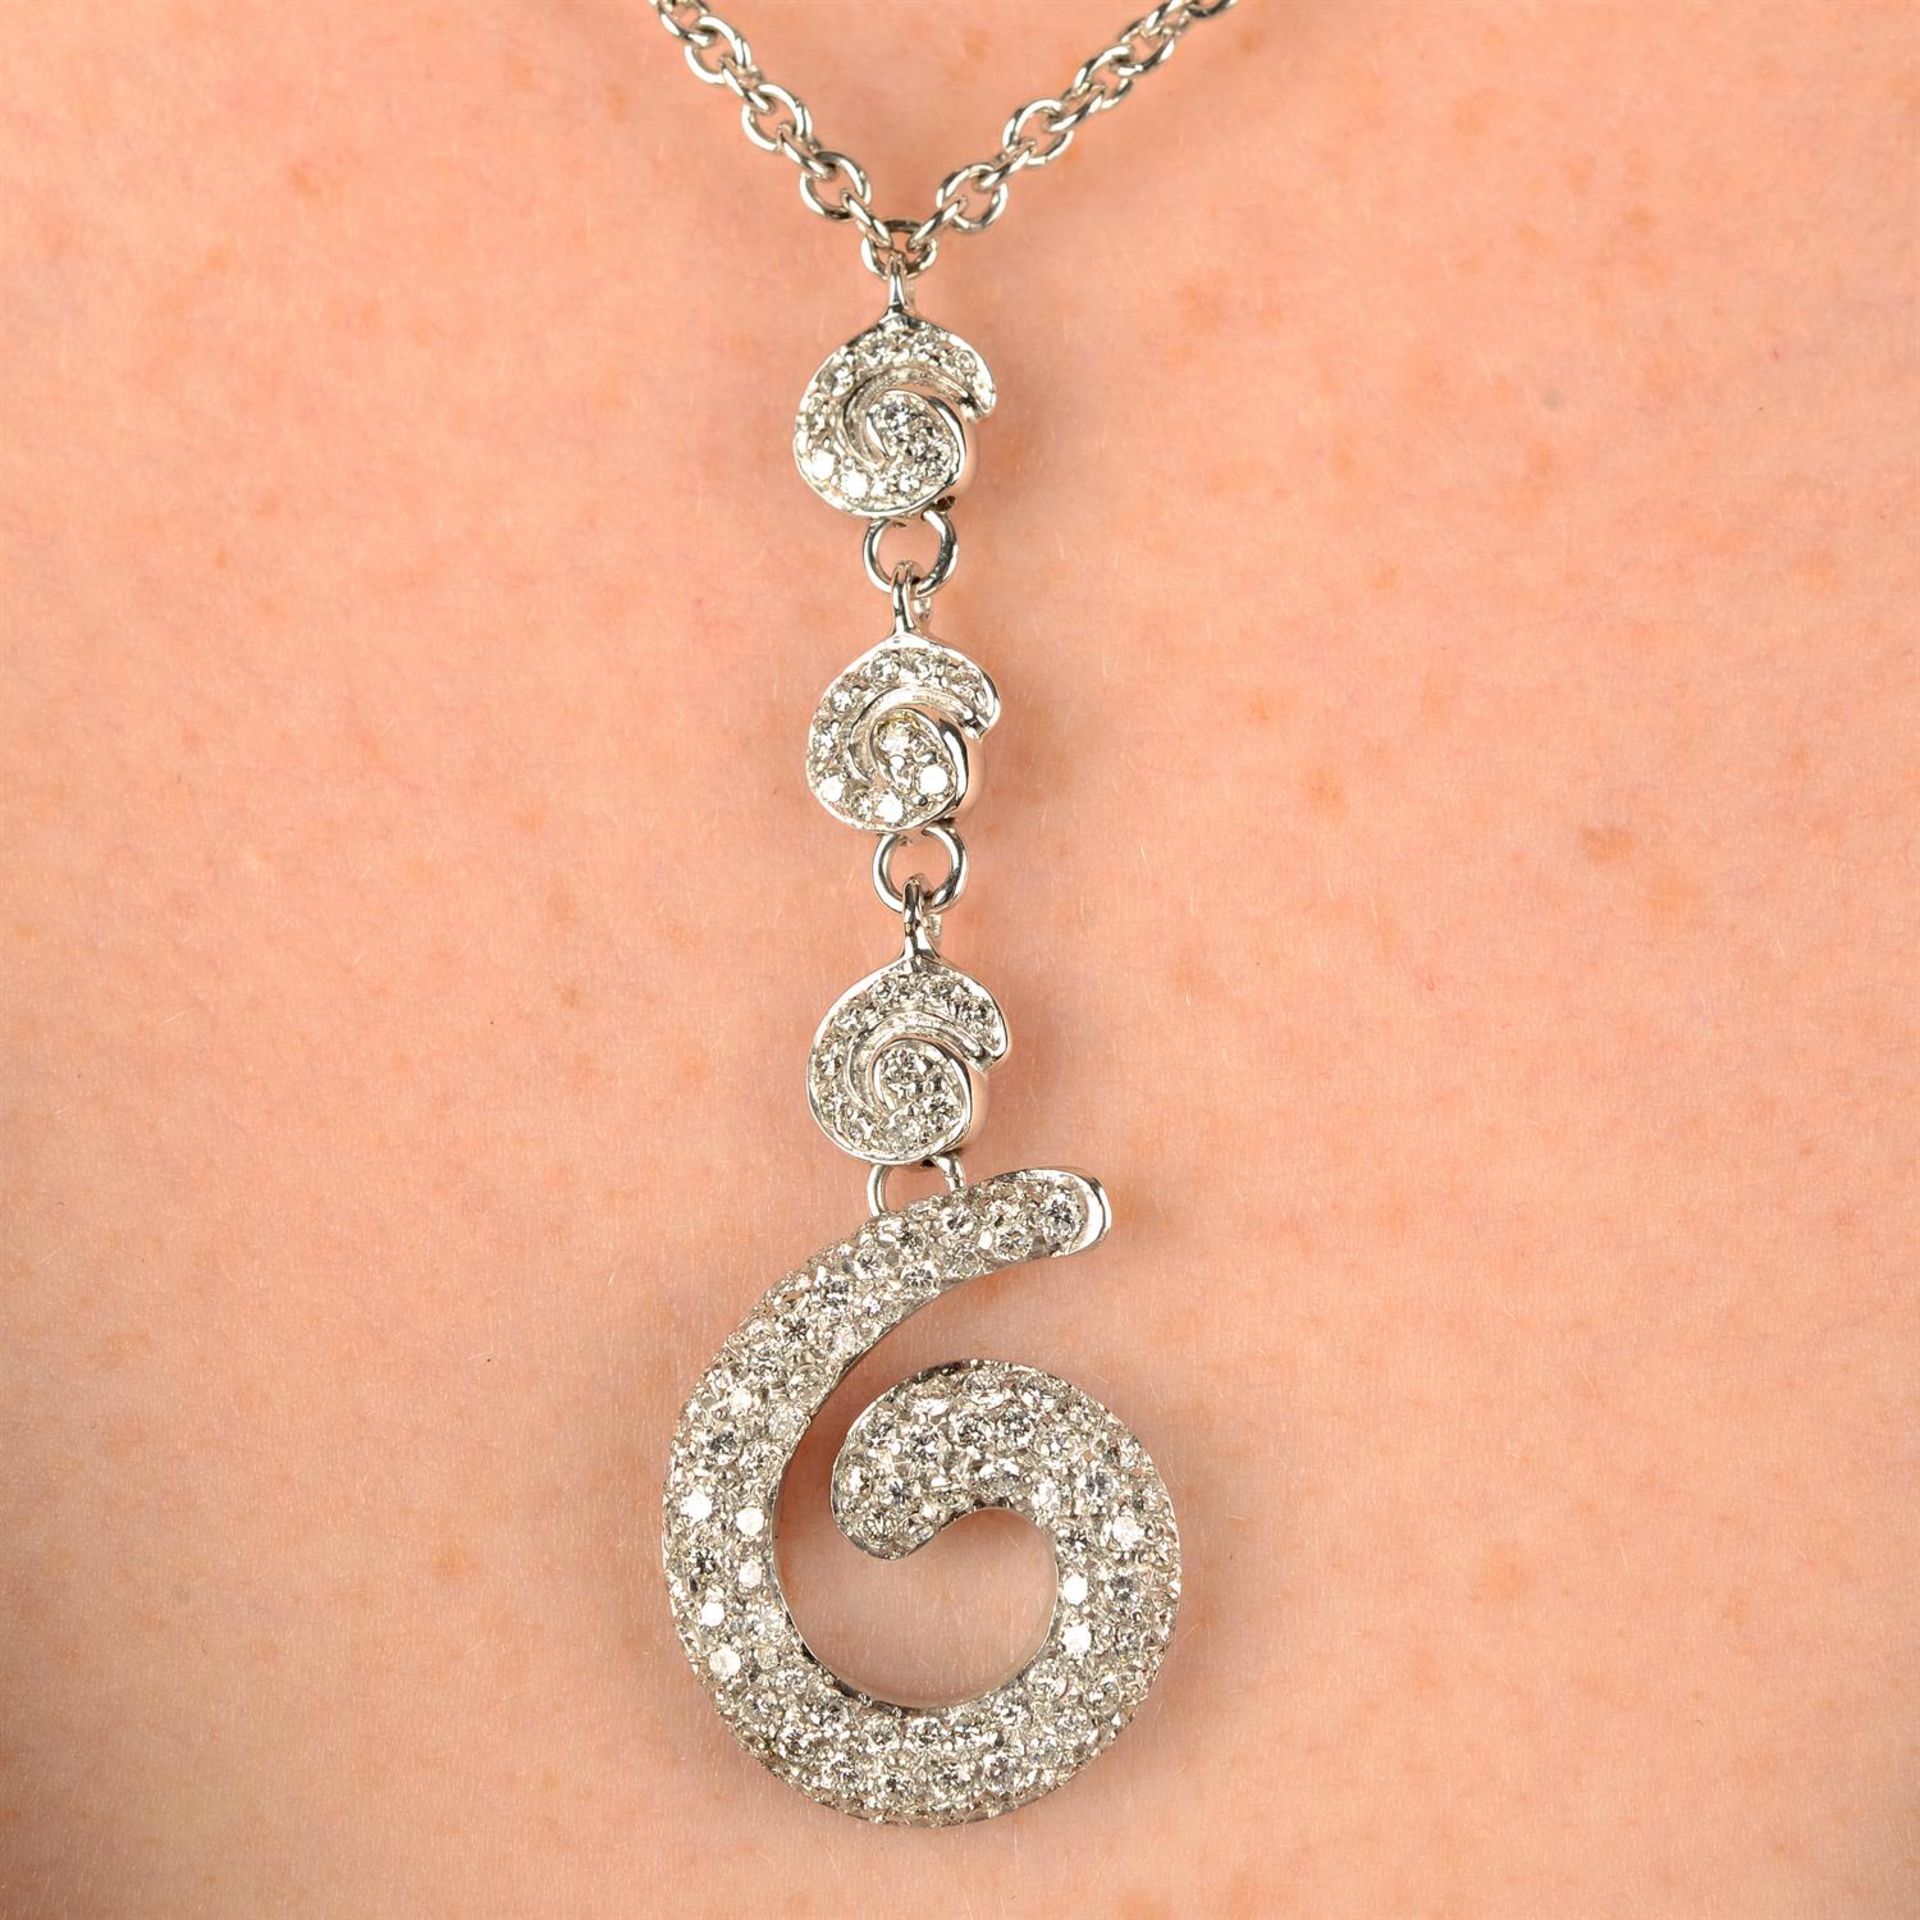 A pavé-set diamond scroll pendant necklace.